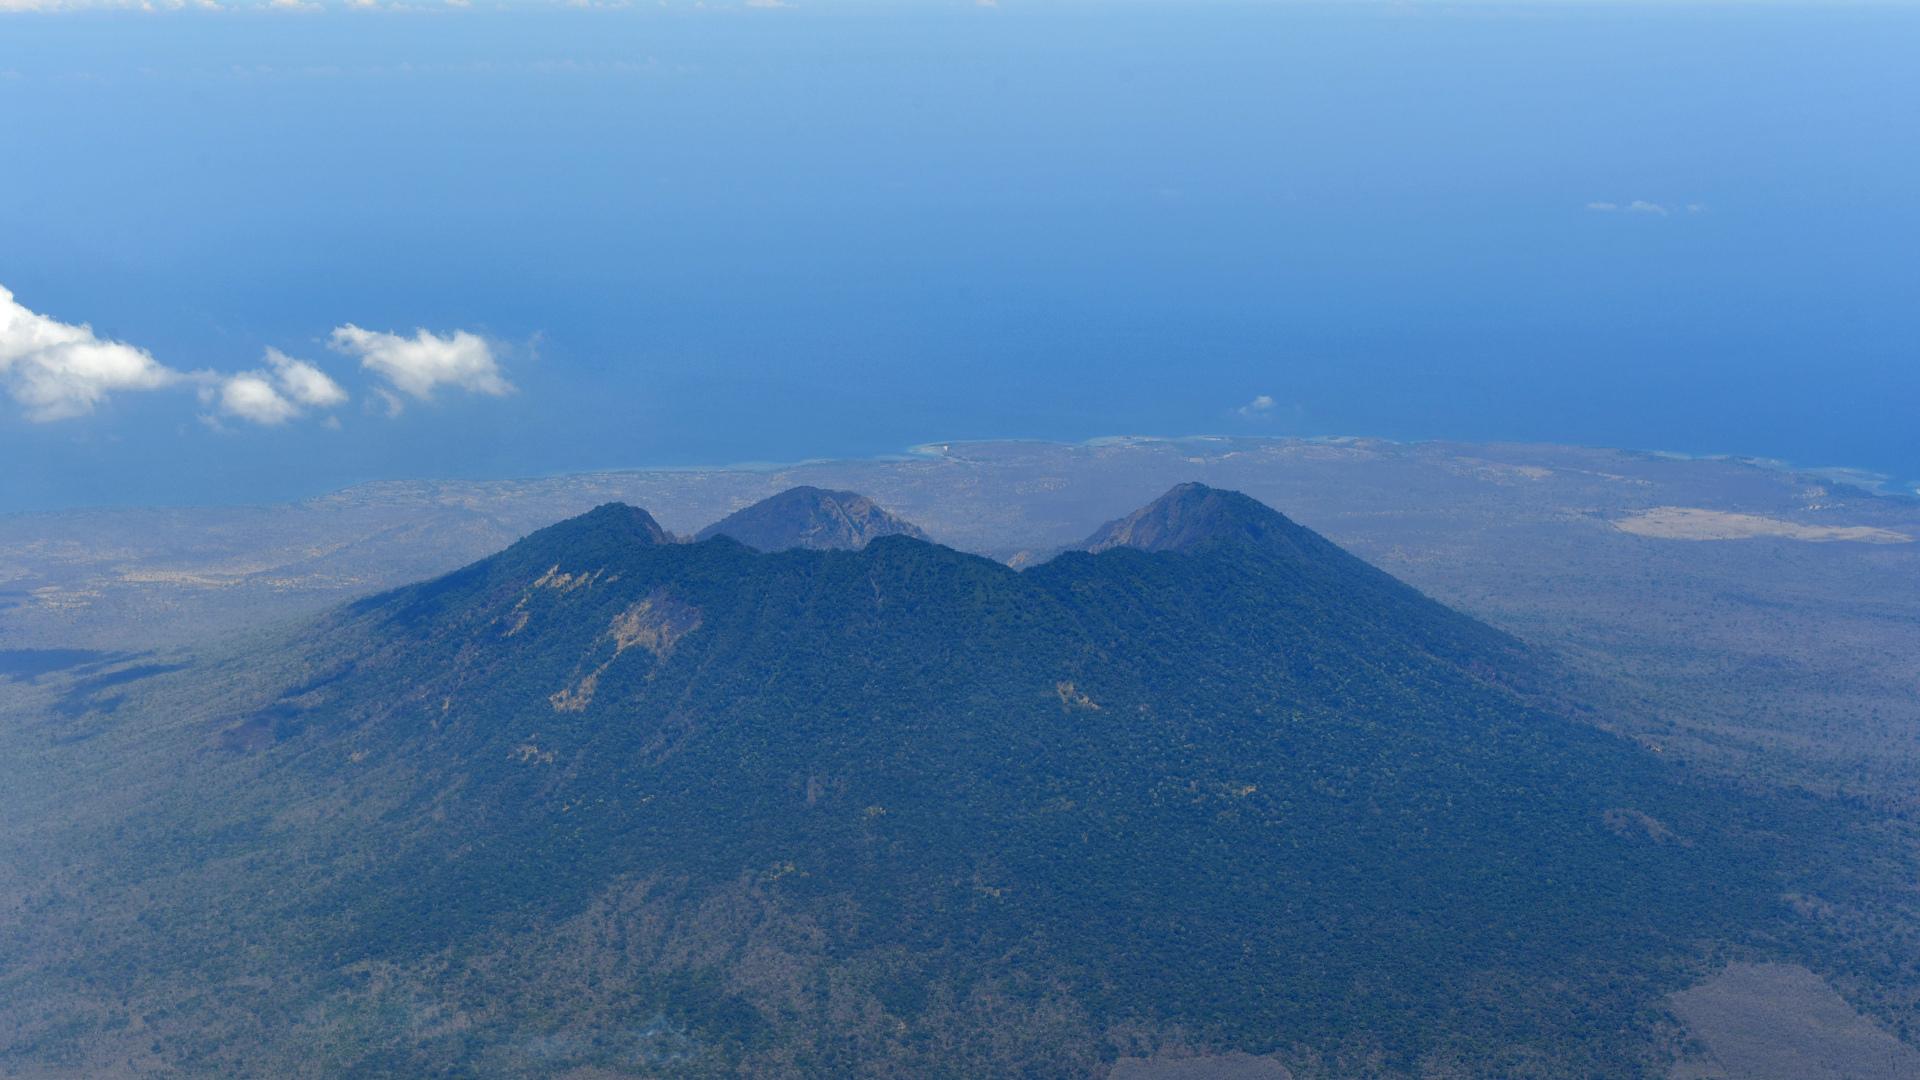 touristin posiert vor aktivem vulkan in indonesien – und fällt rein